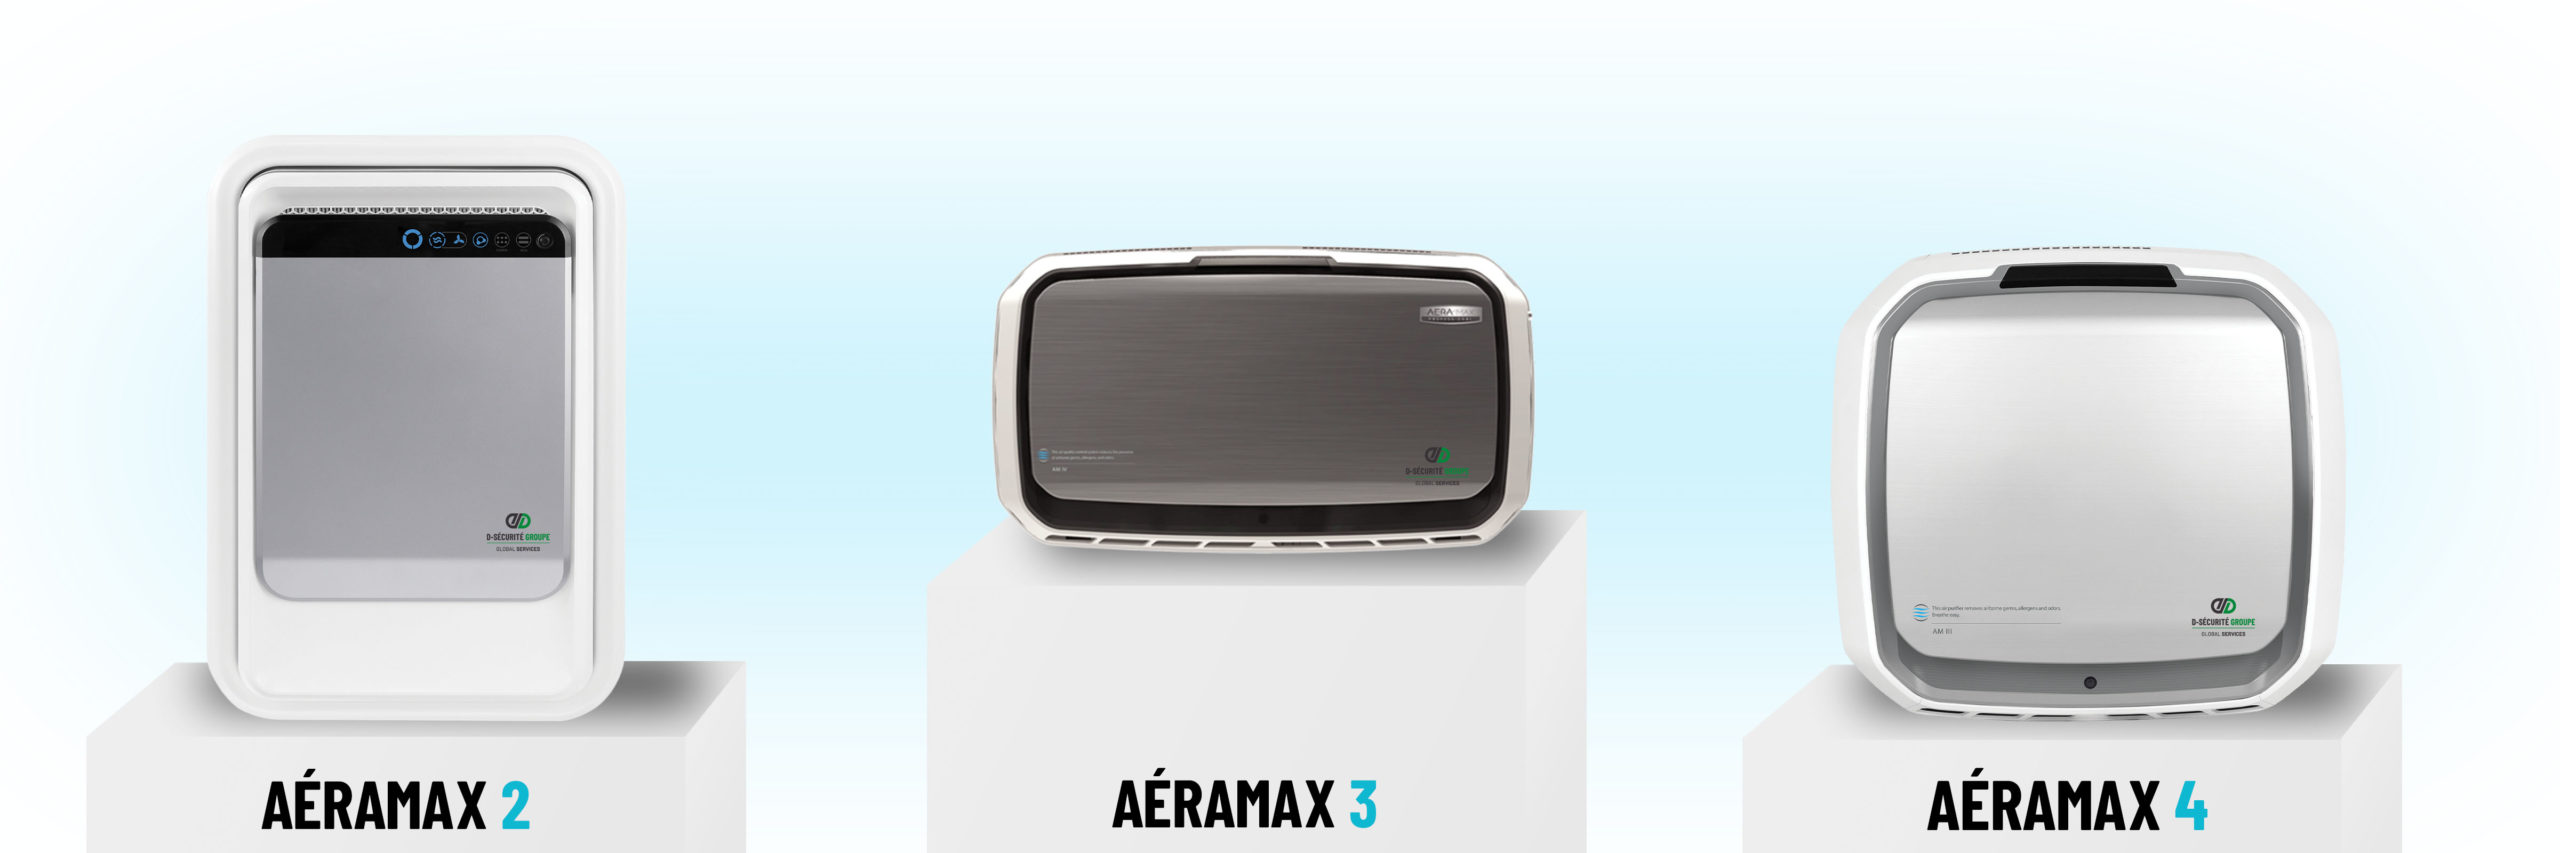 Présentation de trois purificateurs d'air Aeramax